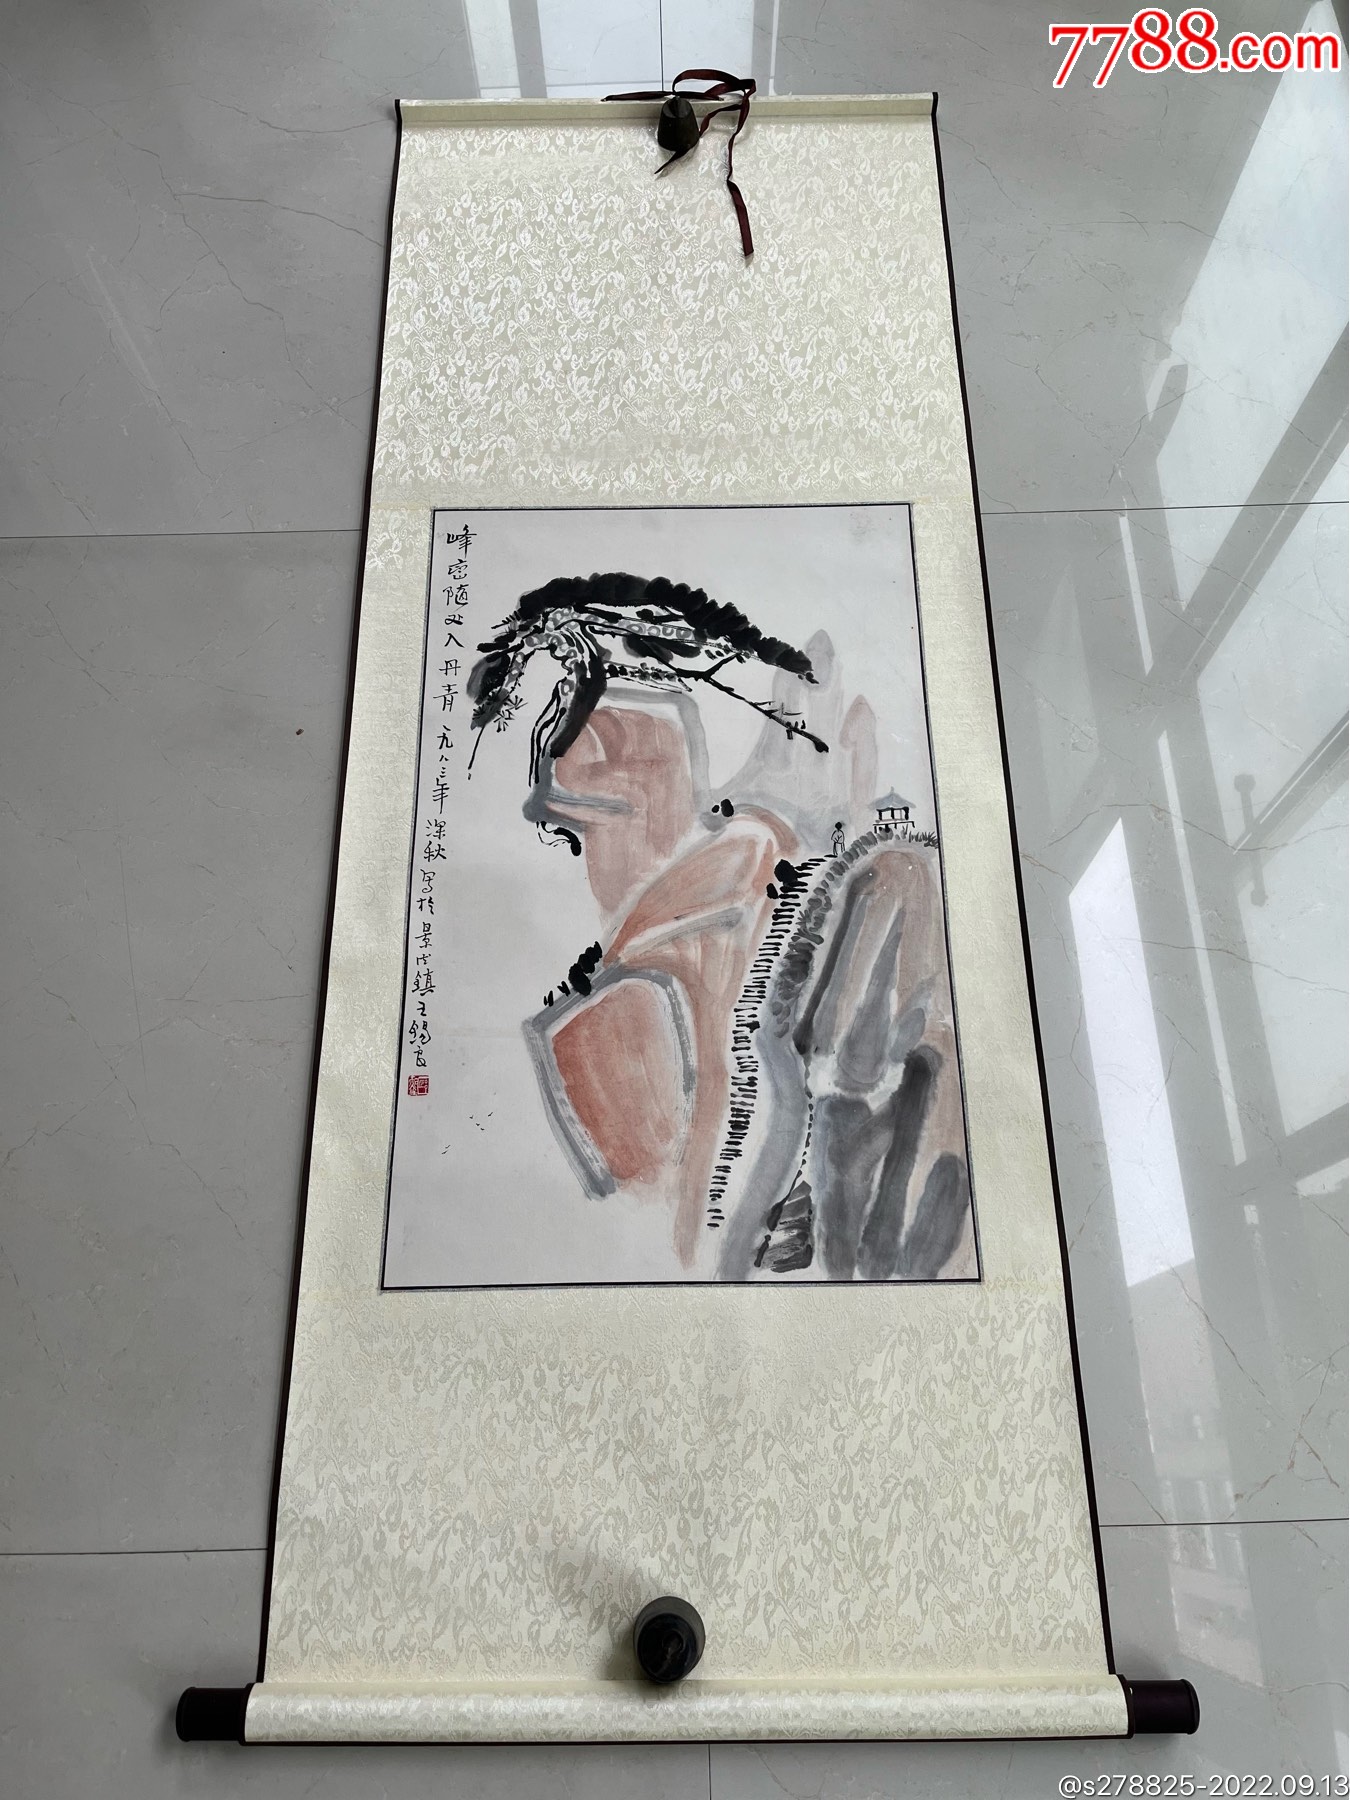 国瓷泰斗王锡良大师创作《兰亭集序》瓷板画 - 哔哩哔哩